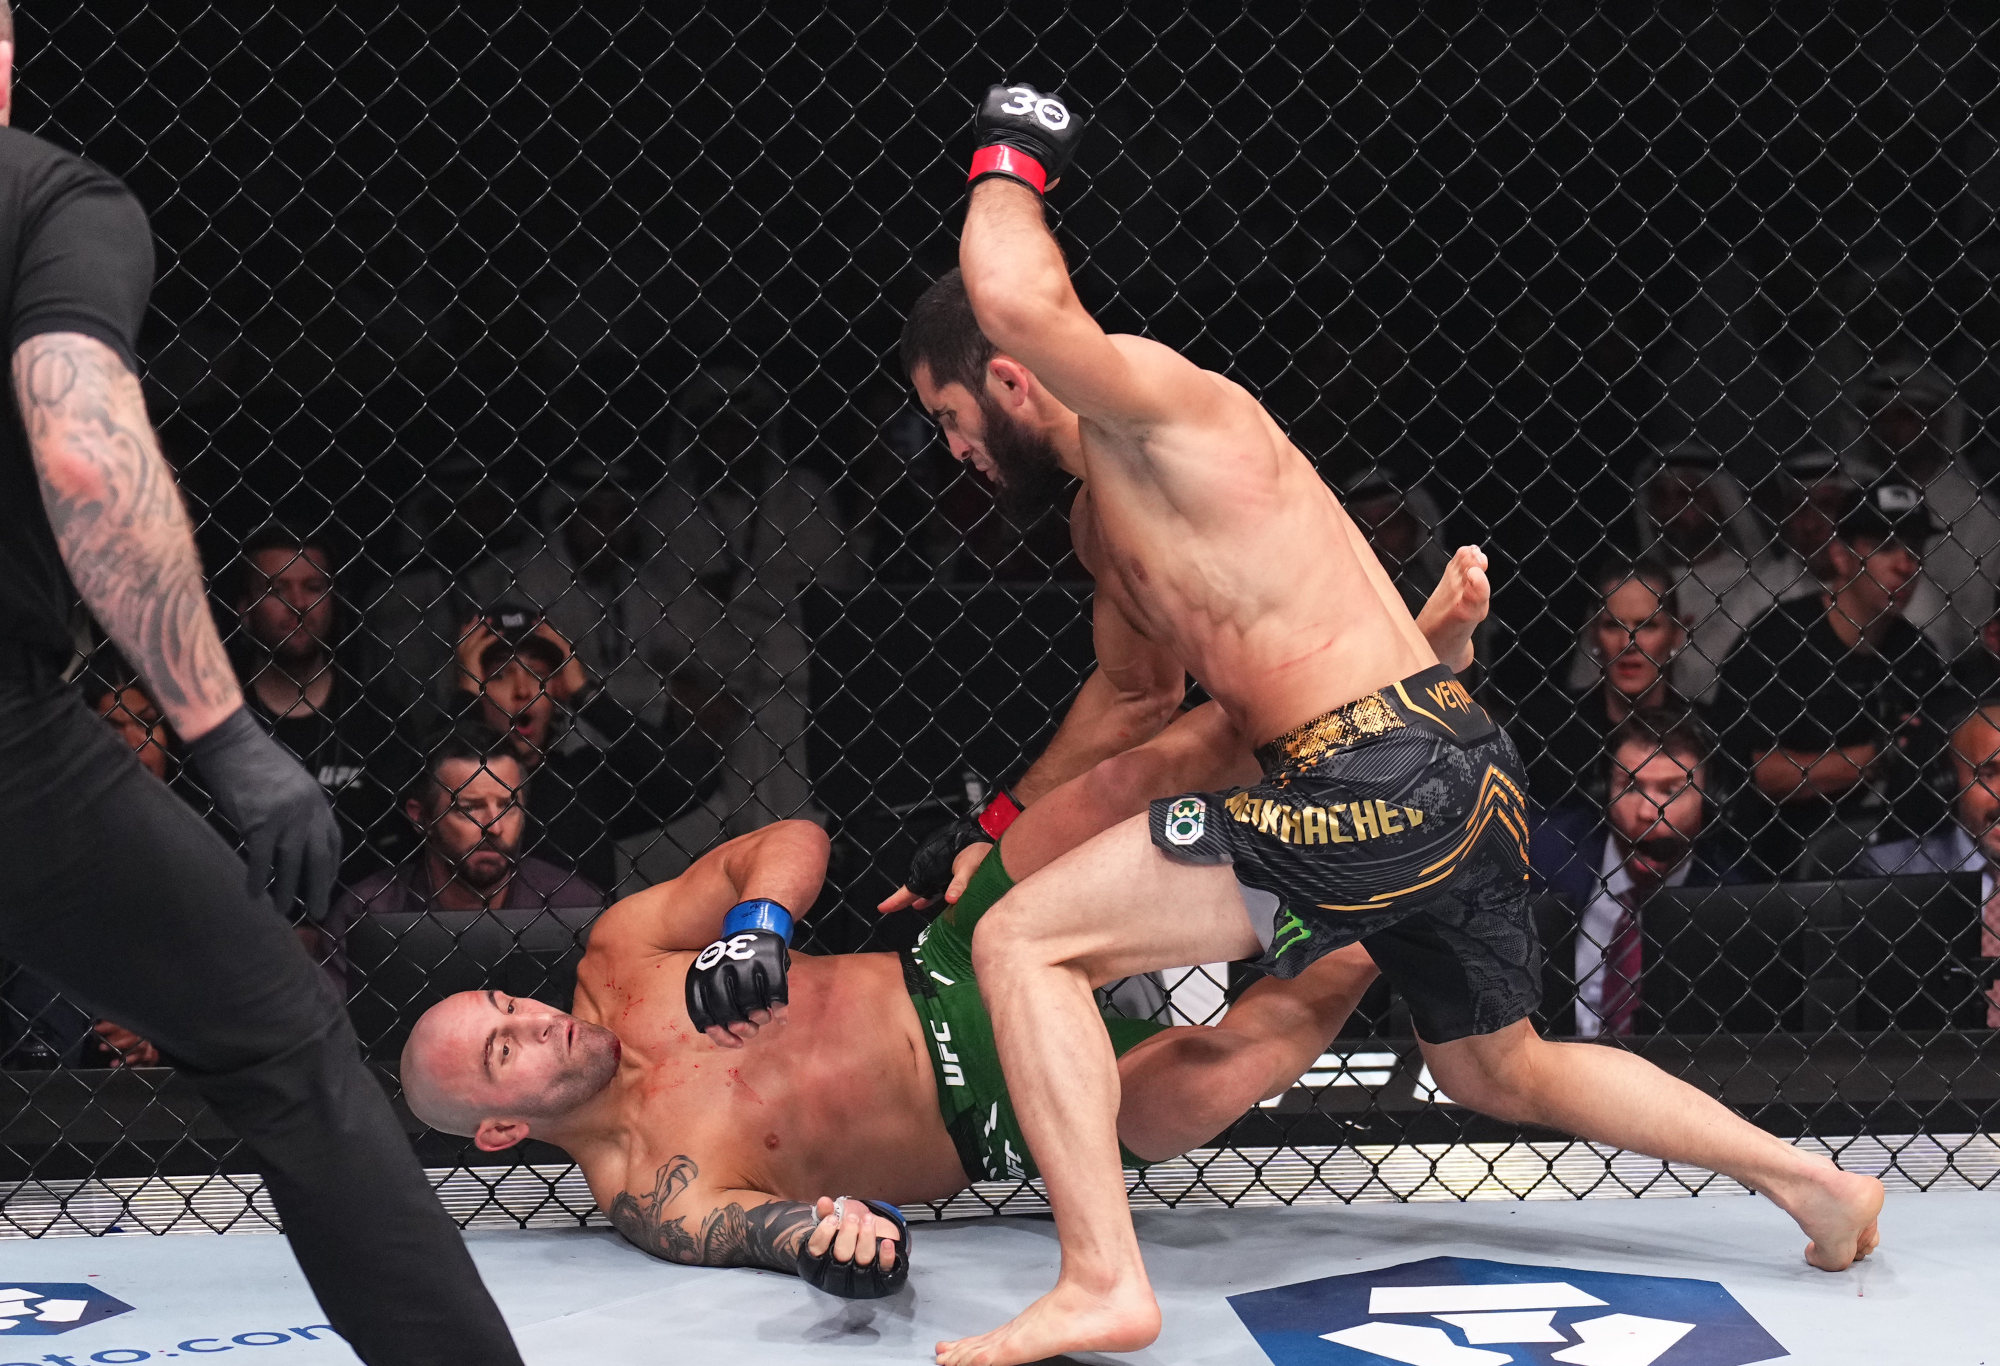 Islam Makhachev knocks out Alexander Volkanovski.